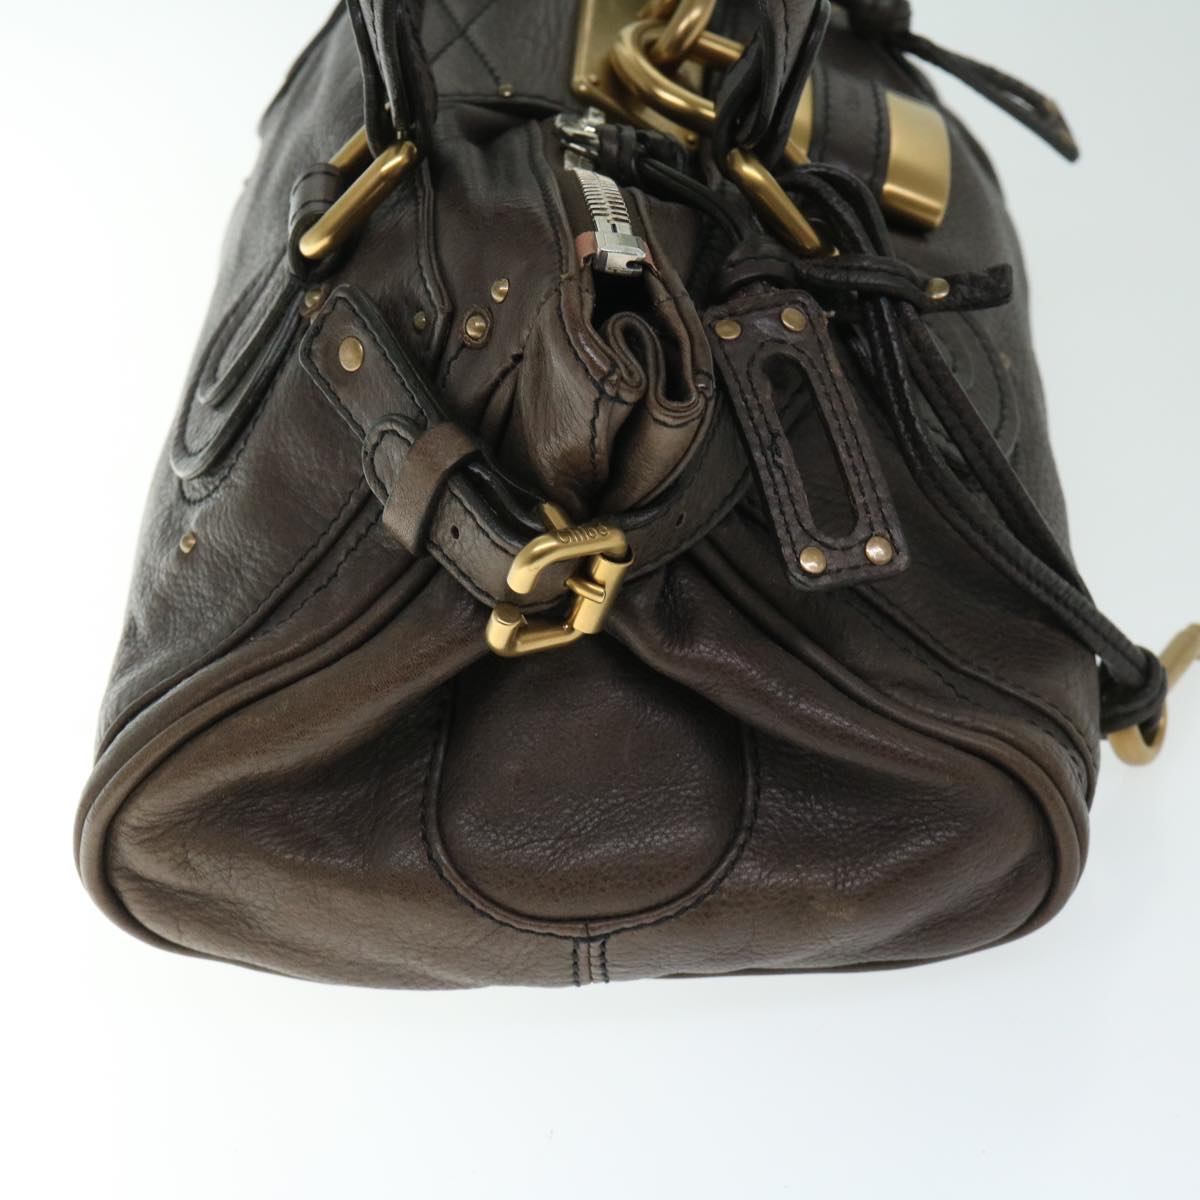 Chloe Paddington Hand Bag Leather Brown Auth am5880